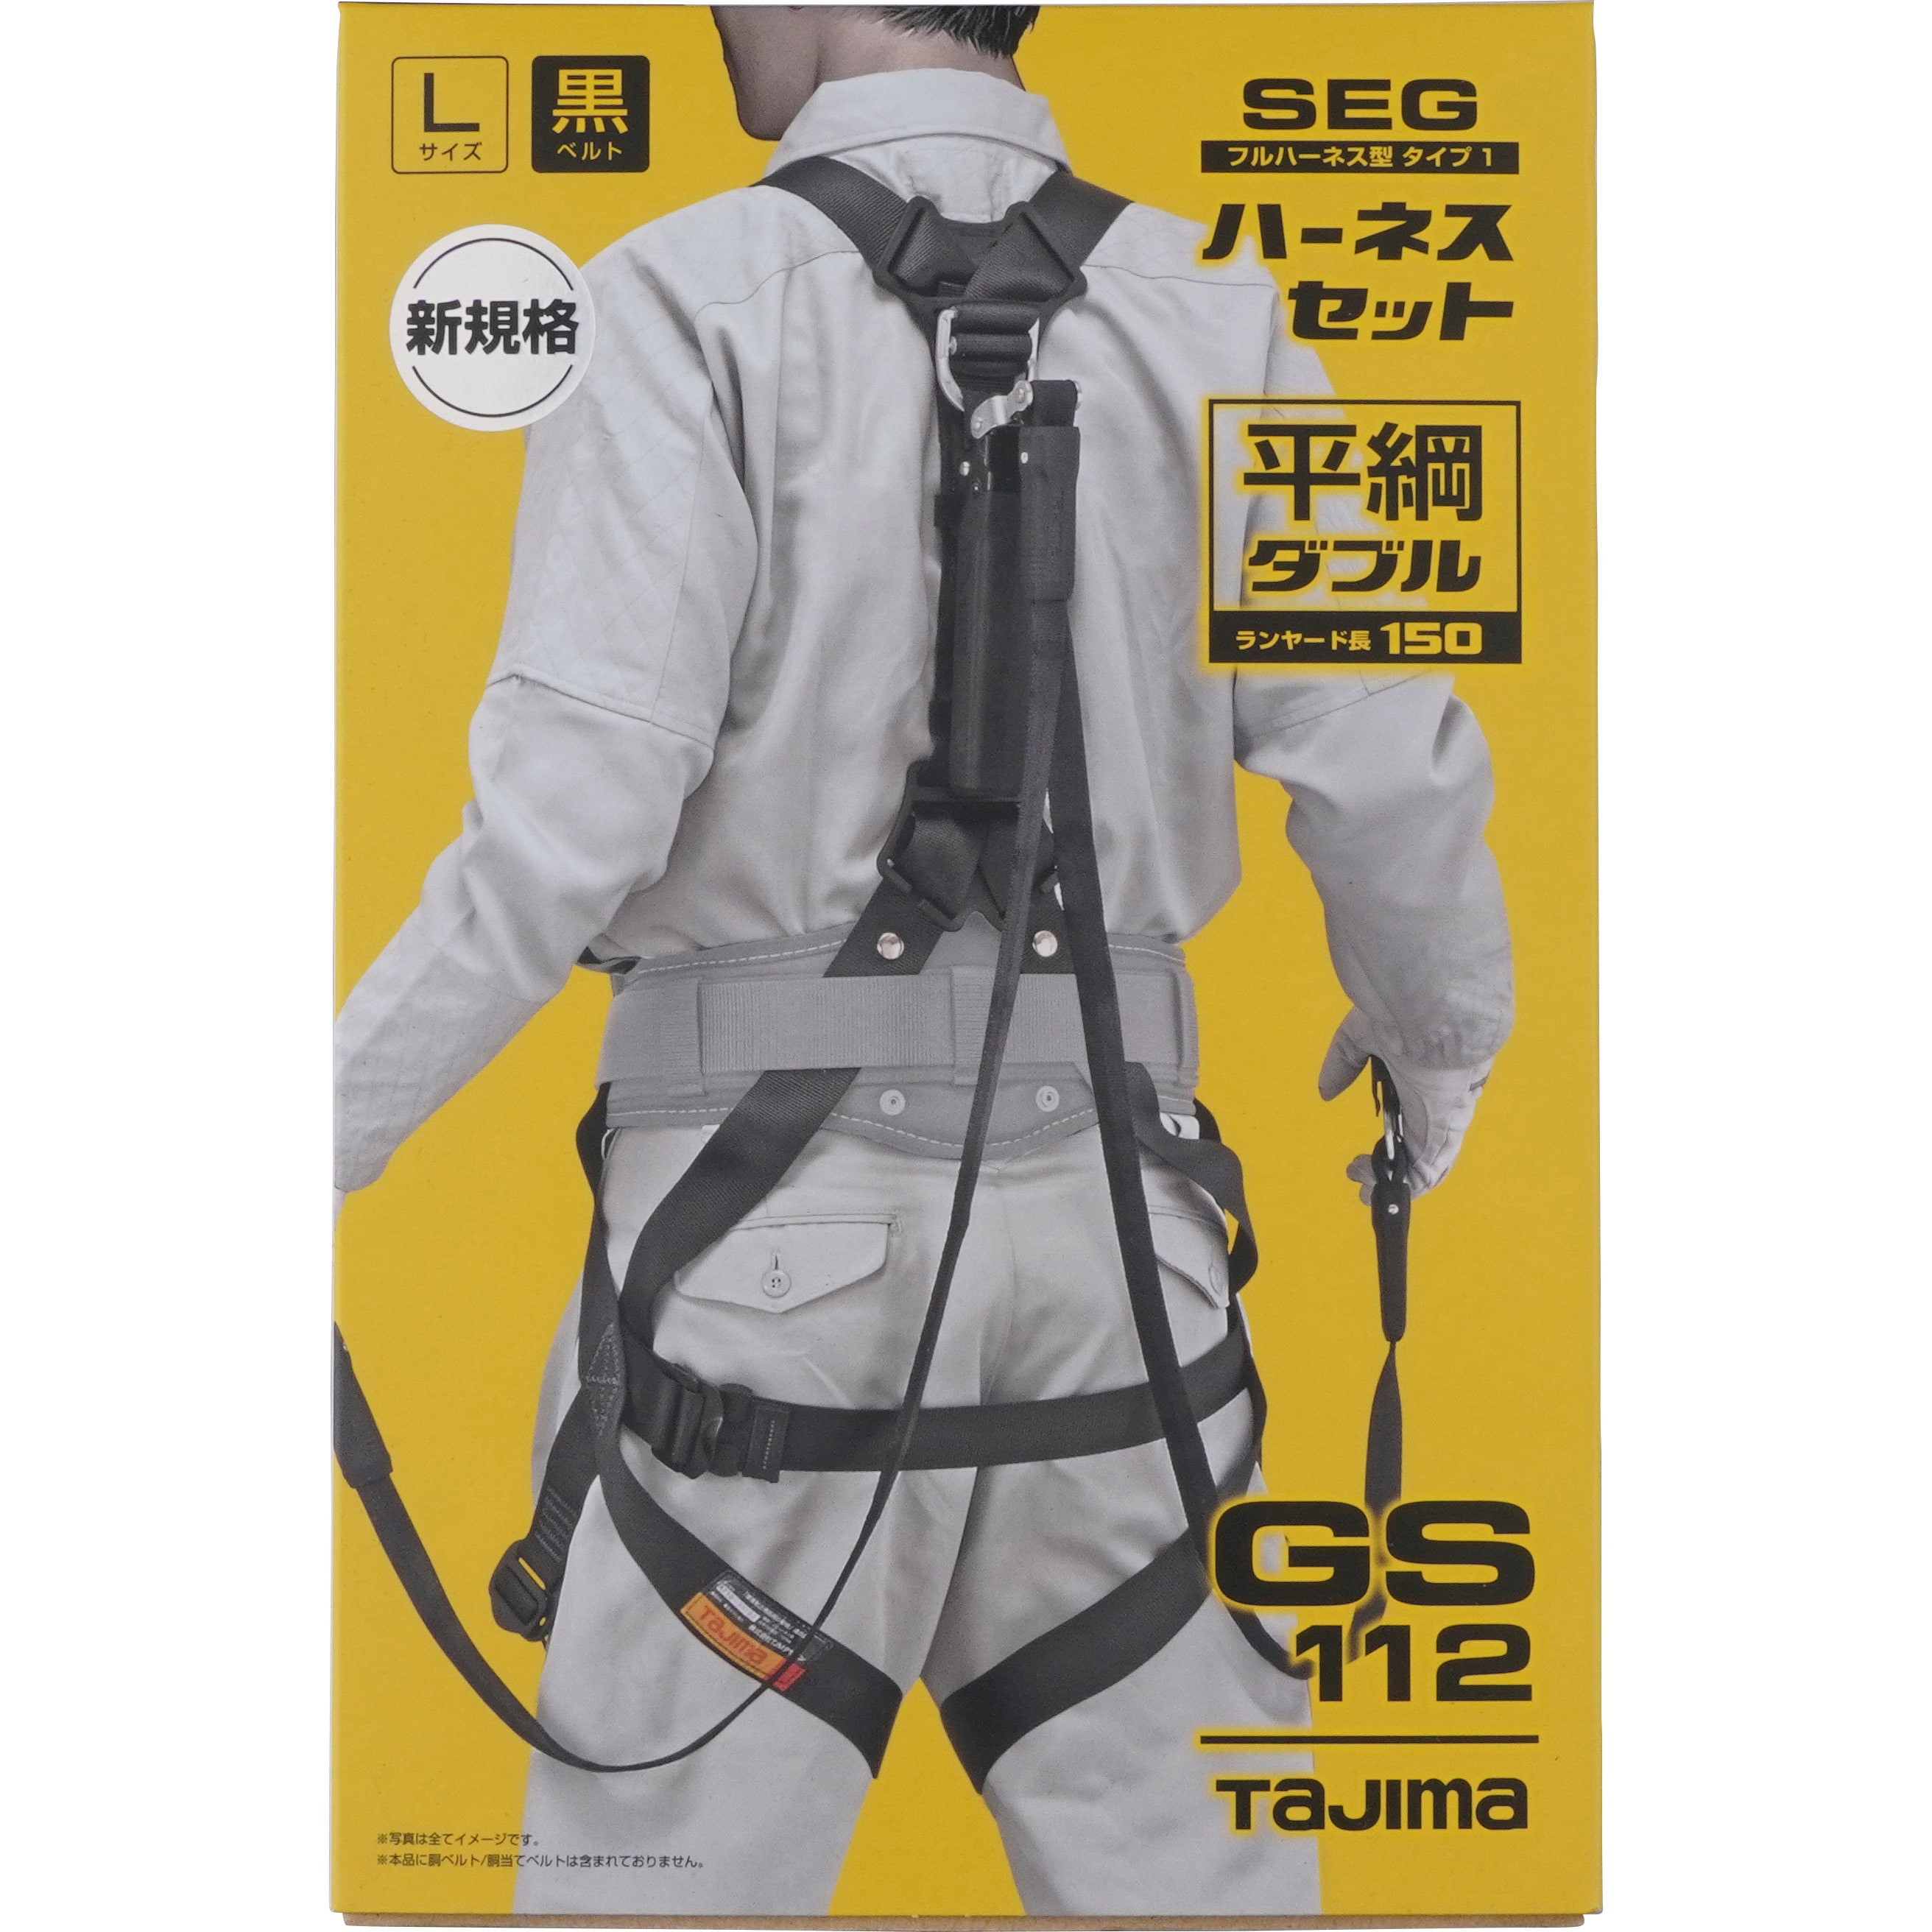 タジマ Tajima フルハーネス安全帯Lサイズ 新規格 腰当てパット付き